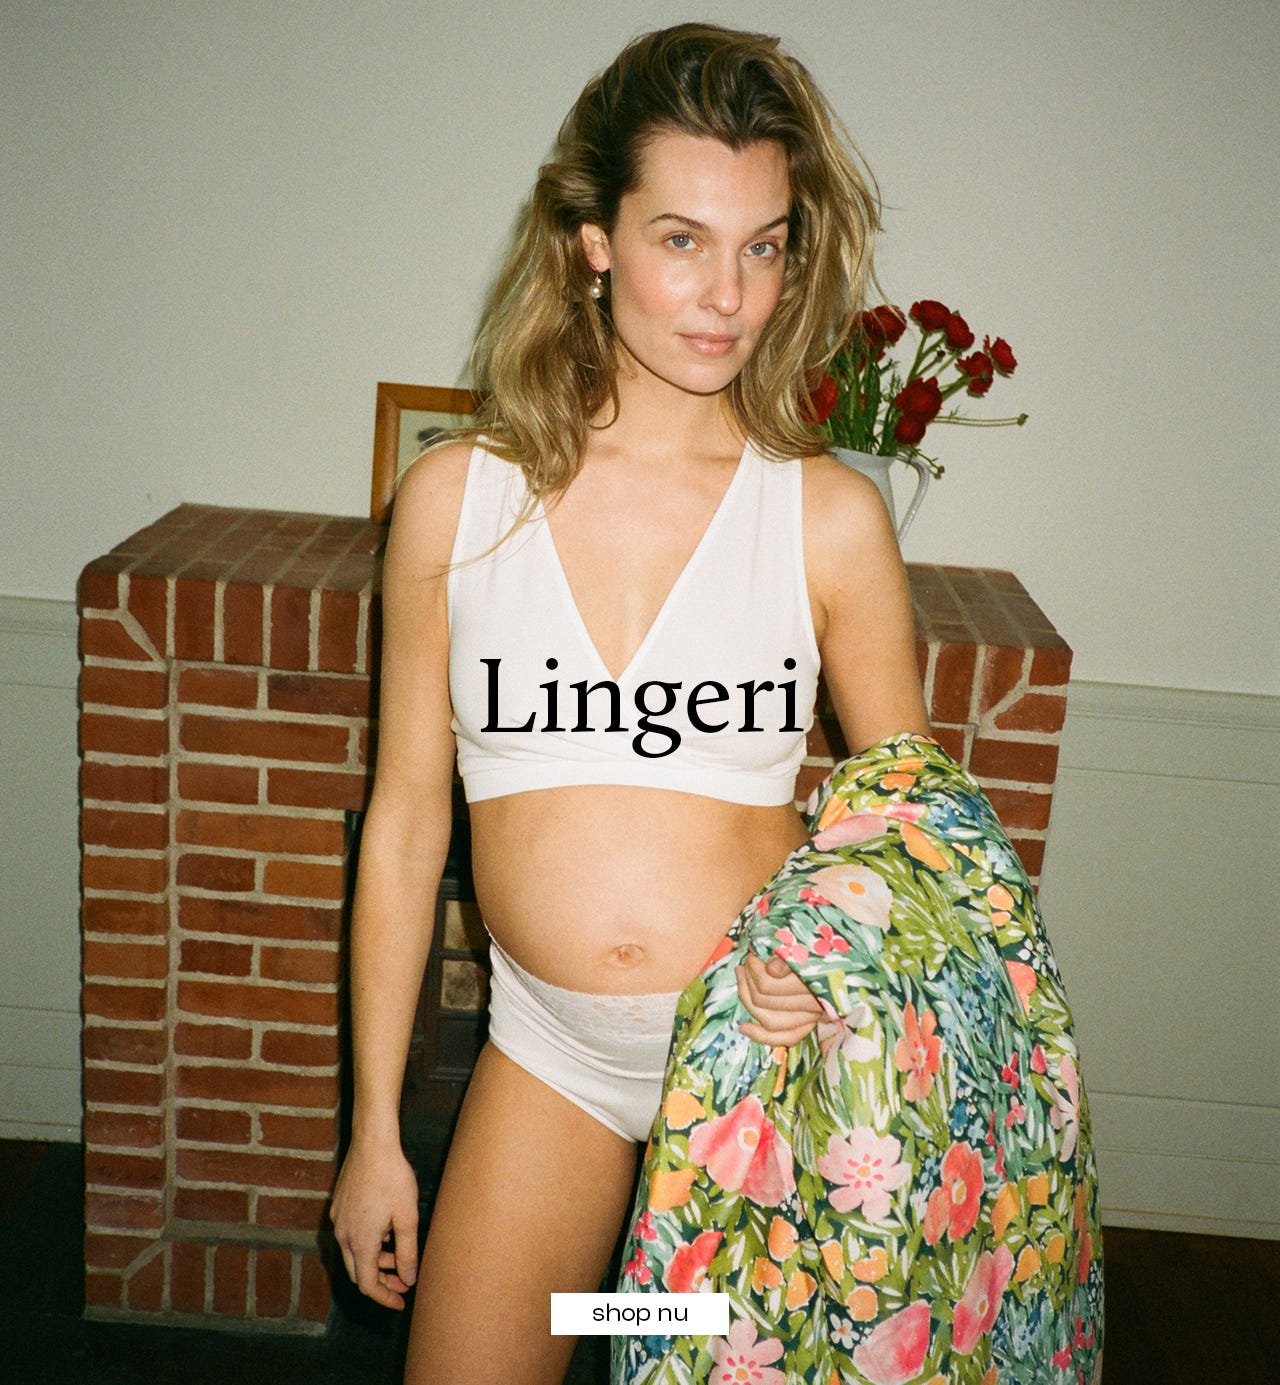 row05_01_lingerie-da-dk.jpg